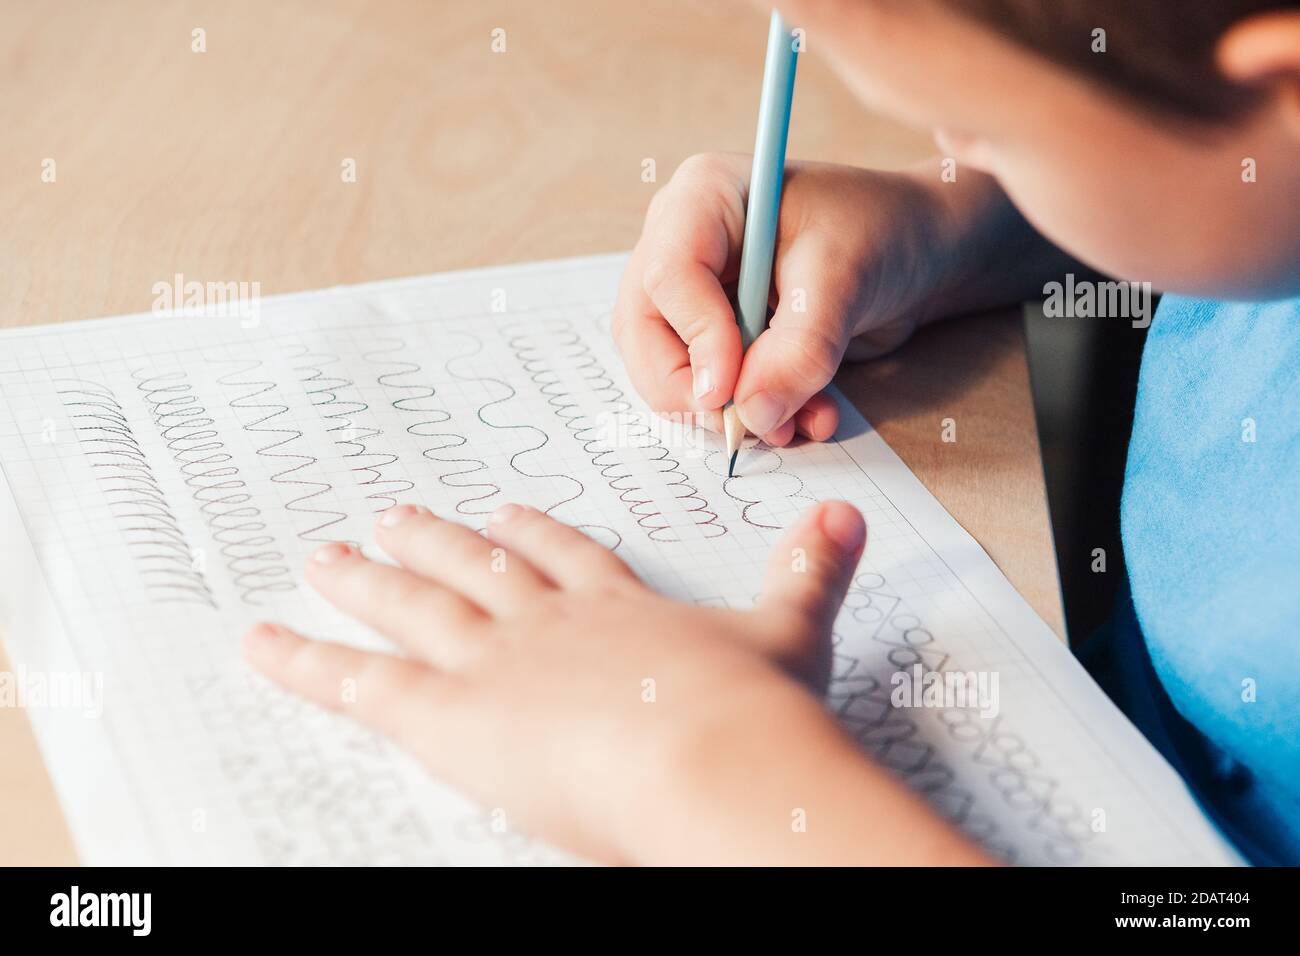 Nahaufnahme von Schuljunge tun Schreiben Aufgabe. Vorschreiben Übung, um die Hand für Schreiben Briefe vorzubereiten. Konzept der Kindererziehung Stockfoto